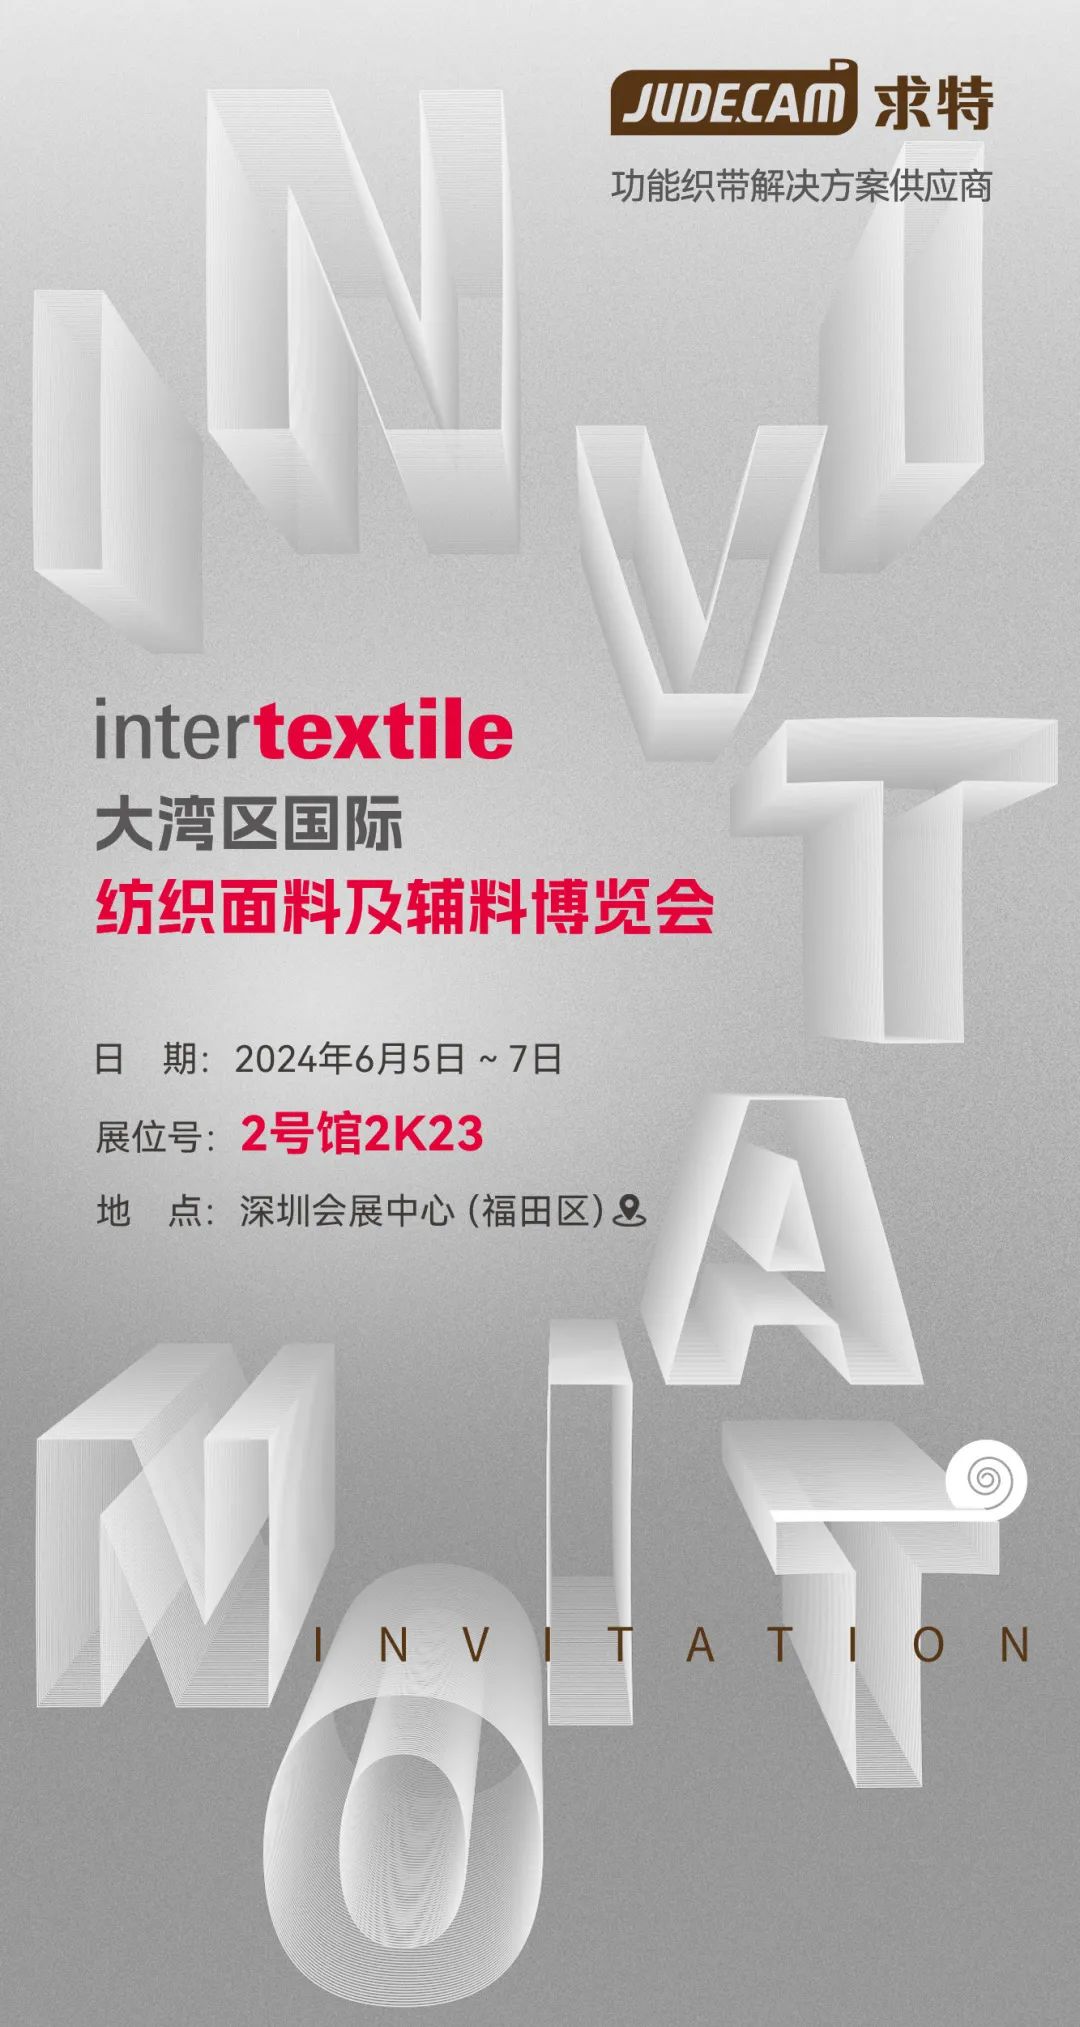 JUDE Webbing will be present at InterTex Shenzhen 2024